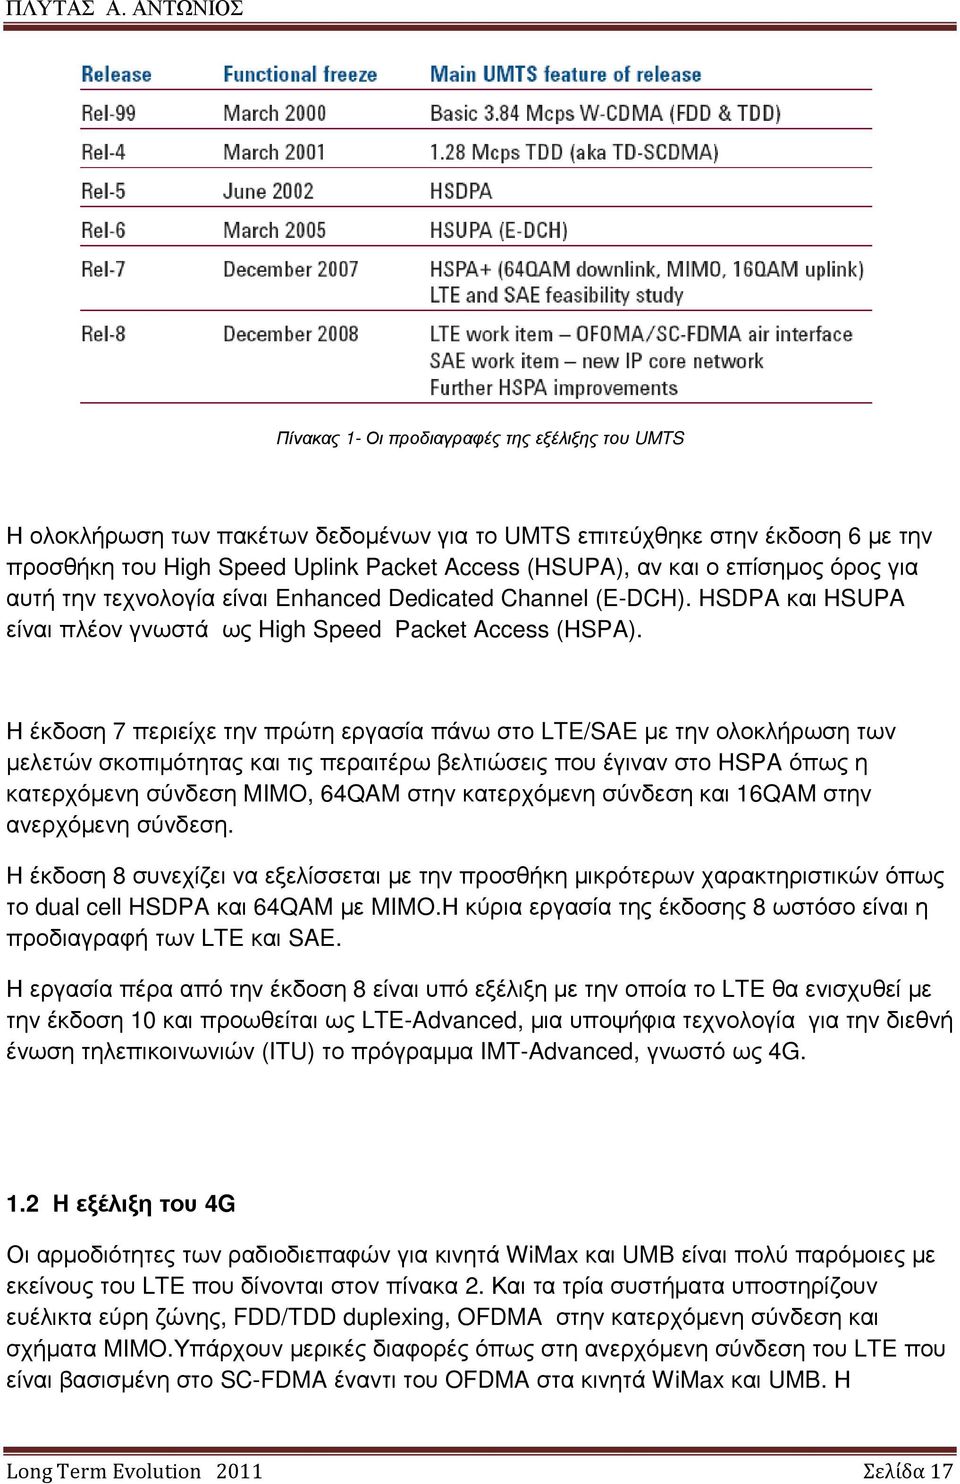 Η έκδοση 7 περιείχε την πρώτη εργασία πάνω στο LTE/SAE µε την ολοκλήρωση των µελετών σκοπιµότητας και τις περαιτέρω βελτιώσεις που έγιναν στο HSPA όπως η κατερχόµενη σύνδεση MIMO, 64QAM στην